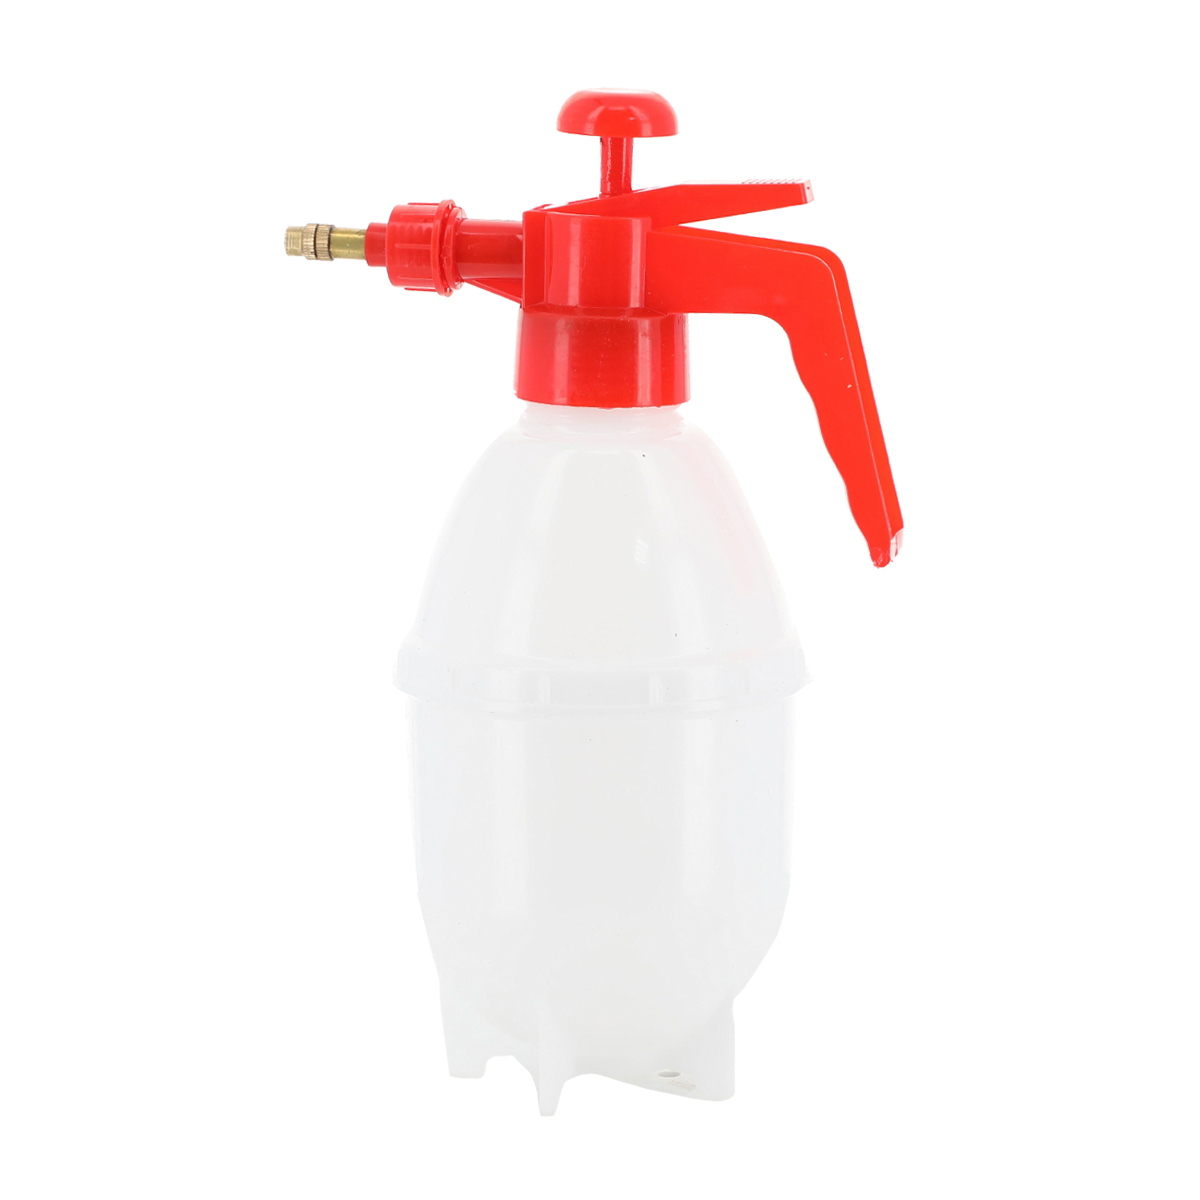 Relax Sprayer Bottle BSP1024-1 0.8Ltr